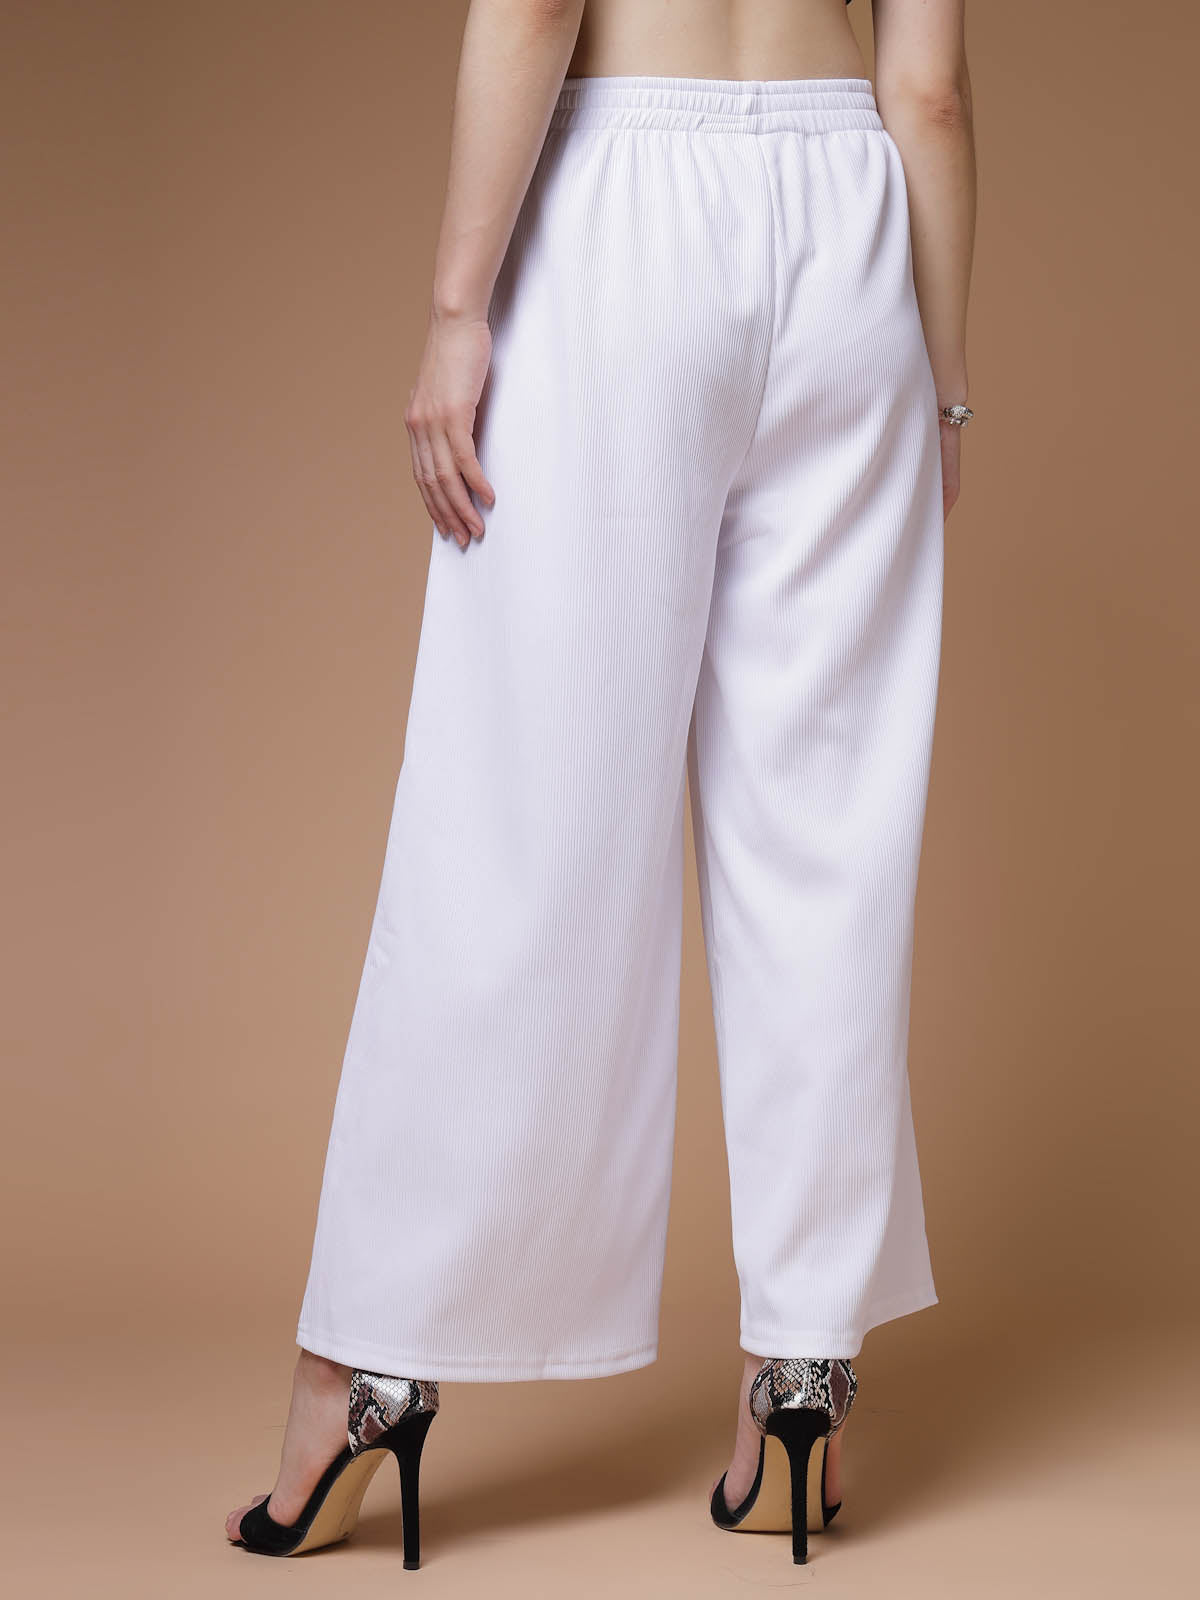 Parallel Pants Black Size 4 Sailor Chic Dress Pants Cotton Spandex Blend  NWT! | eBay